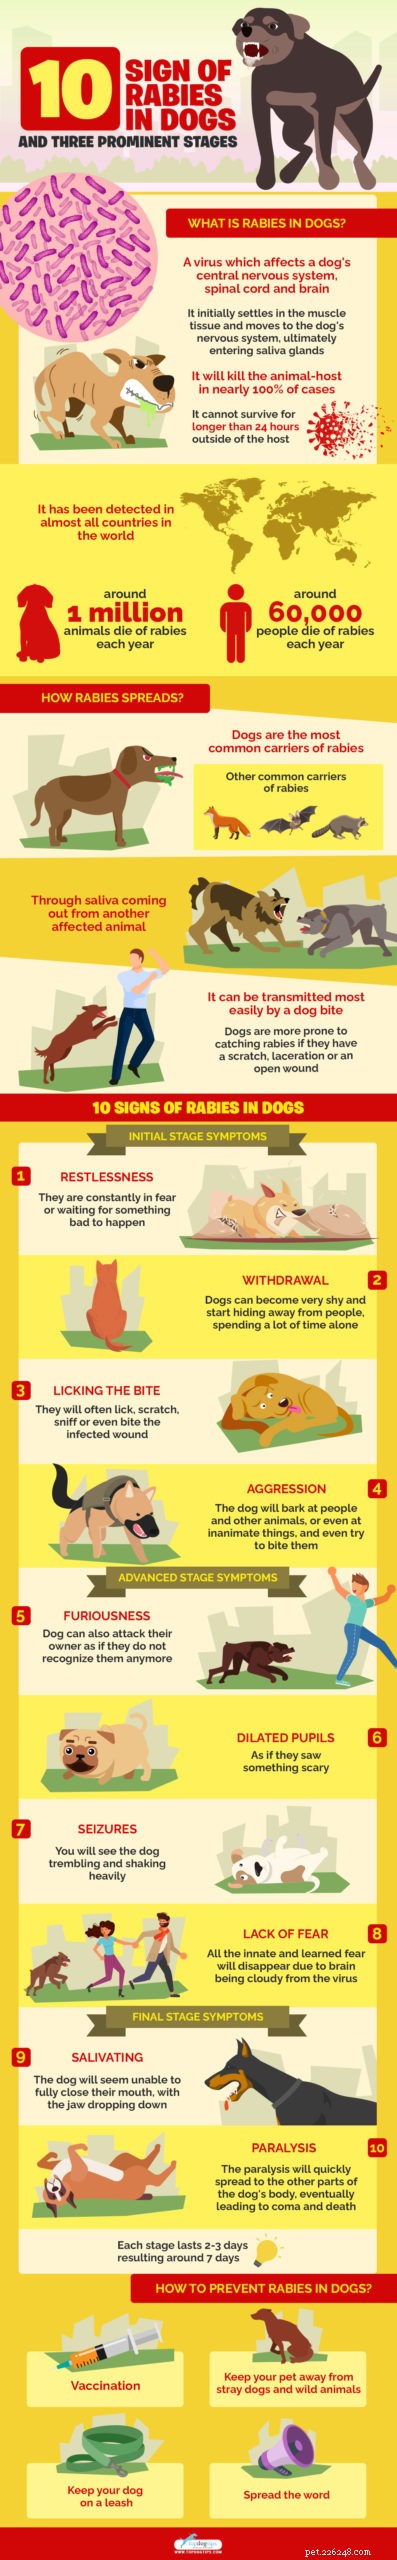 10 signes de la rage chez le chien et trois stades importants